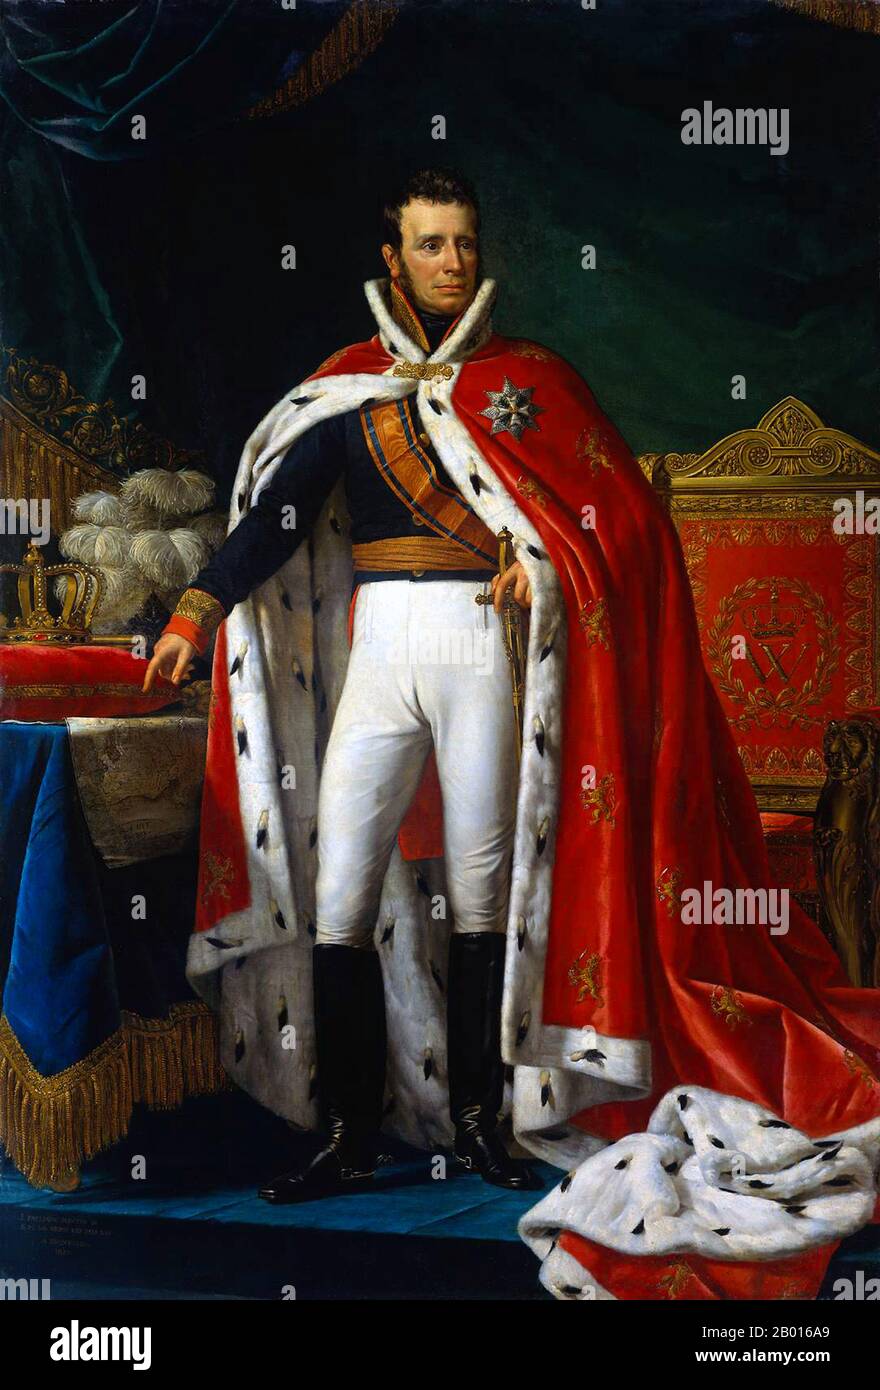 Países Bajos: William I (24 de agosto de 1772 - 12 de diciembre de 1843), Rey de los Países Bajos (r. 1815-1840). Óleo sobre lienzo de Joseph Paelinck (1781-1839), 1819. Guillermo I fue el Príncipe de Orange, el Gran Duque de Luxemburgo y el Rey de los Países Bajos. Hijo del último Stadtholder de la República holandesa, se convirtió en el gobernante del Principado de Nassau-Orange-Fulda después de un acuerdo con Napoleón en 1803, que más tarde lo depuso en 1806. Se le pidió que se convirtiera en el Príncipe Soberano de los Países Bajos Unidos después de la derrota de Napoleón en 1813, y se proclamó rey en 1815. Foto de stock